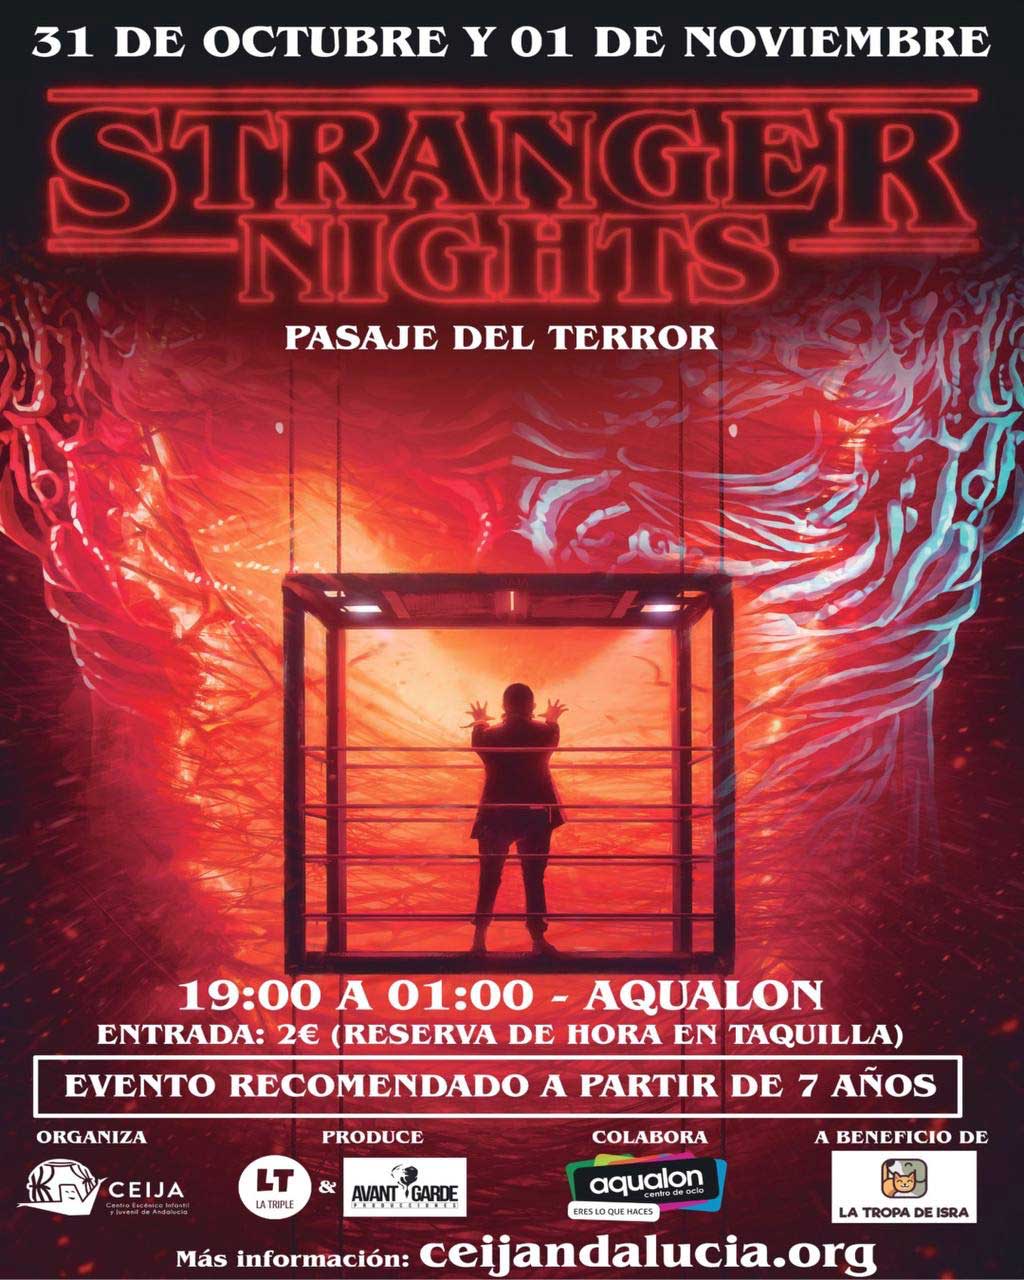 Pasaje del terror Stranger Things En aqualon Huelva 31 de octubre y 1 de noviembre